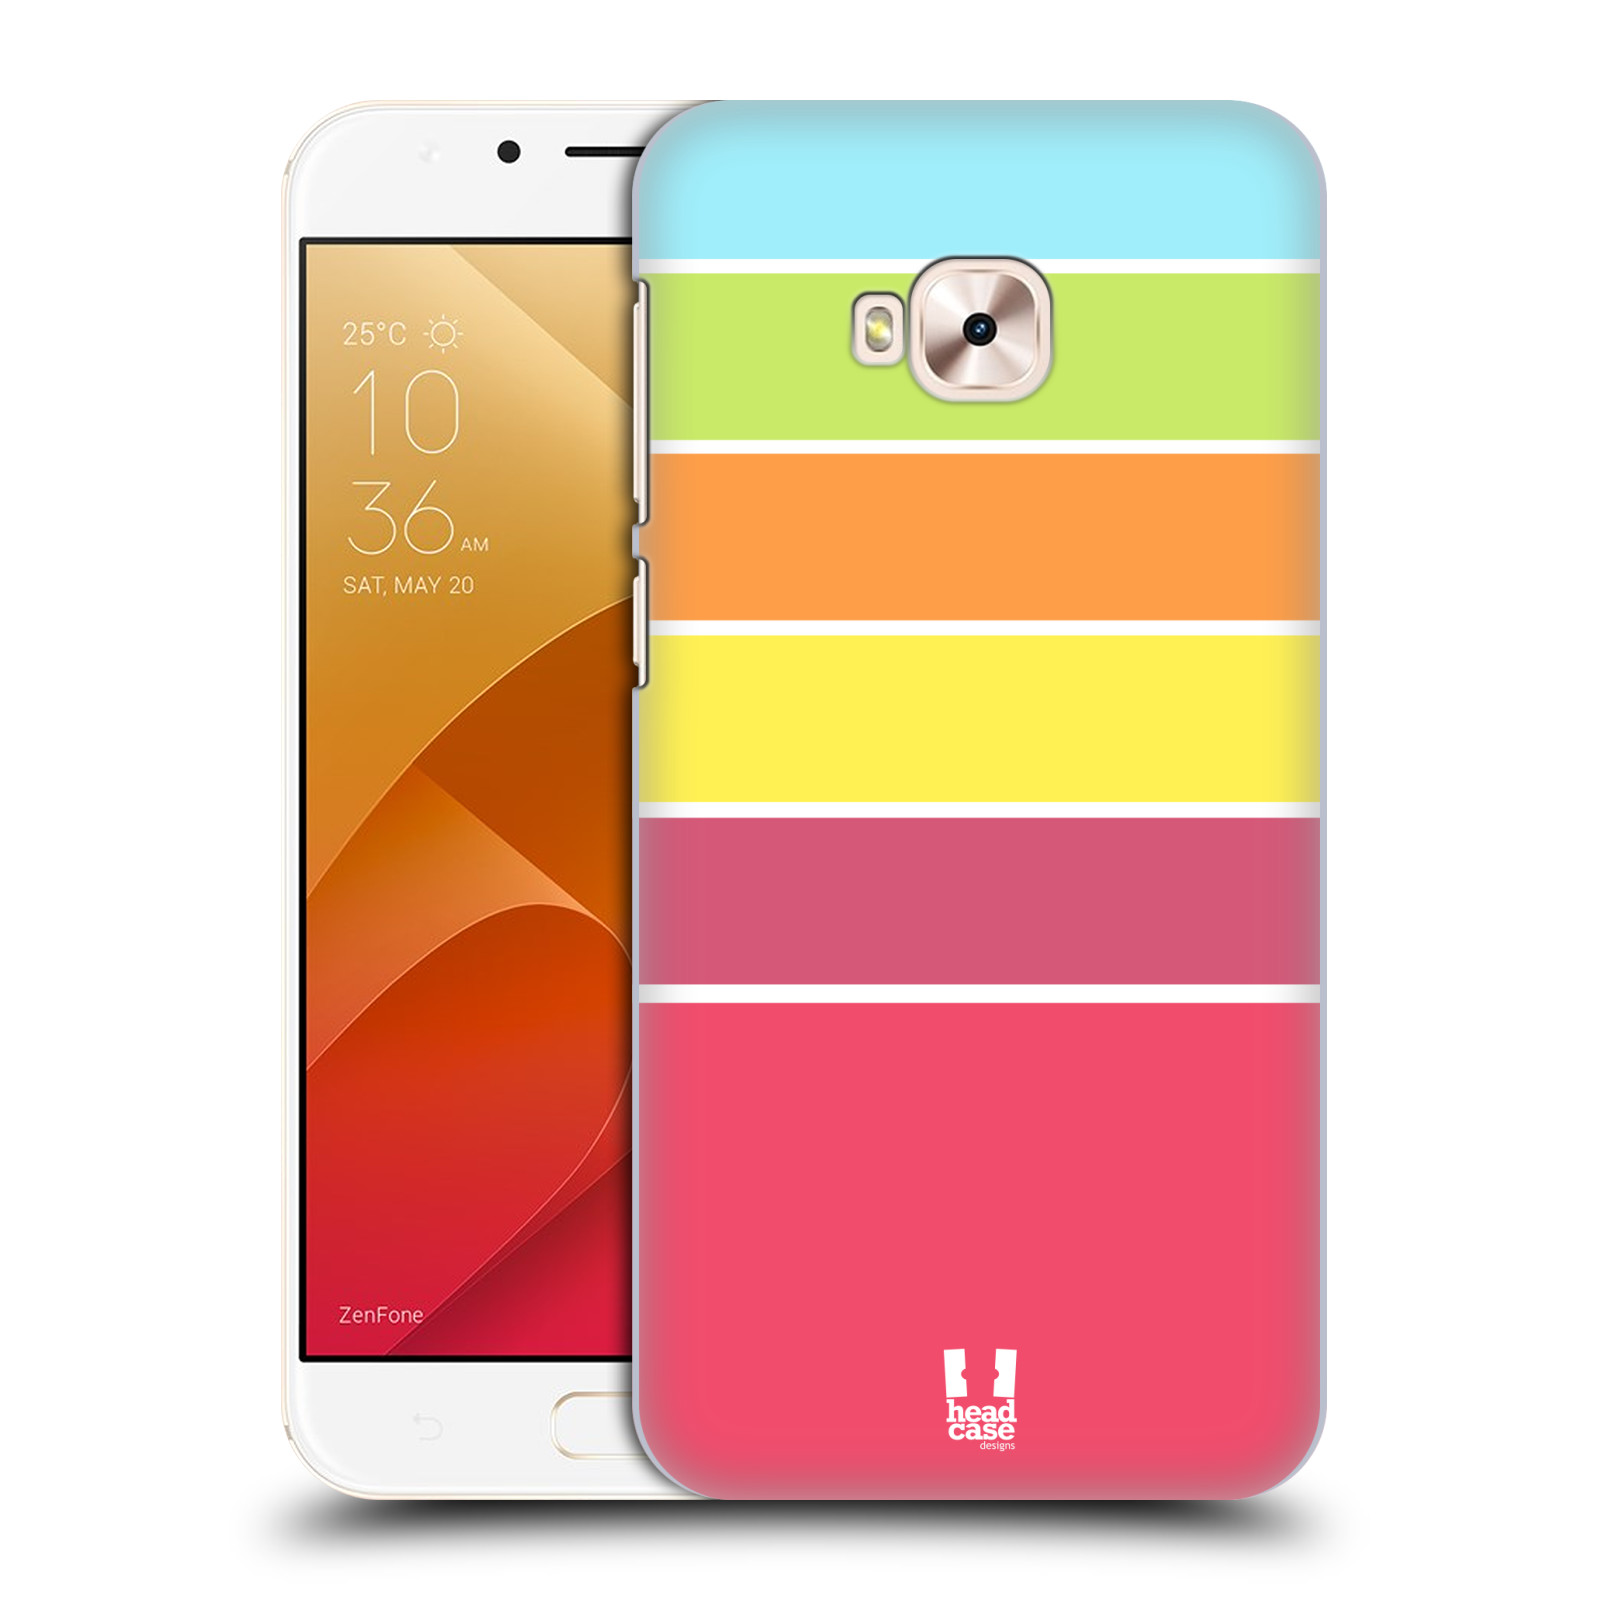 Zadní obal pro mobil Asus Zenfone 4 Selfie Pro ZD552KL - HEAD CASE - barevné pruhy růžová, oranžová